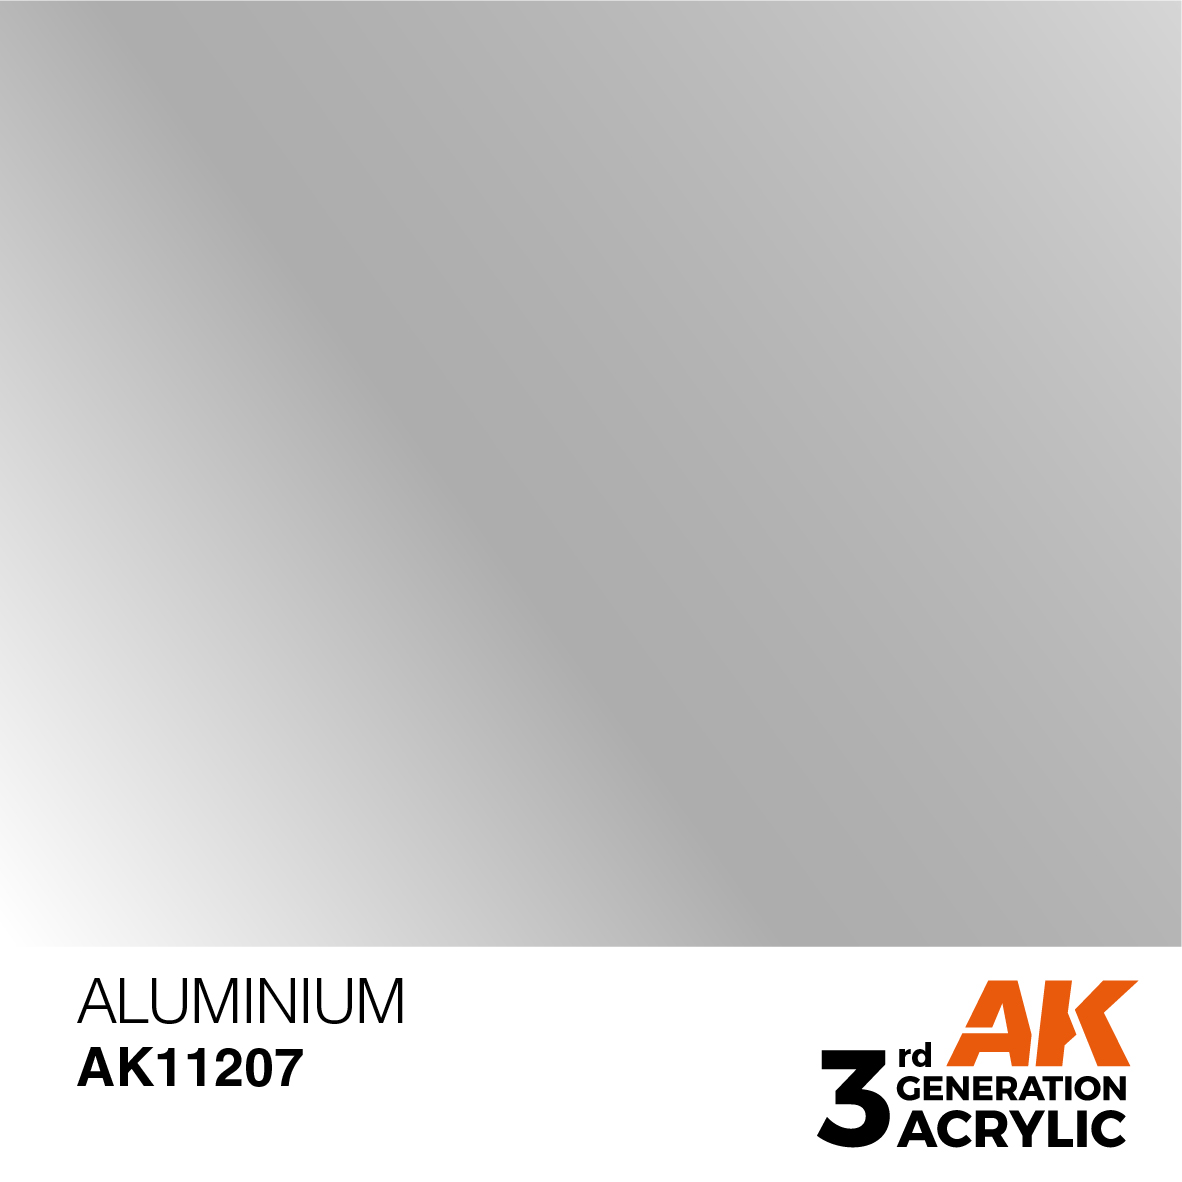 Aluminium – Metallic